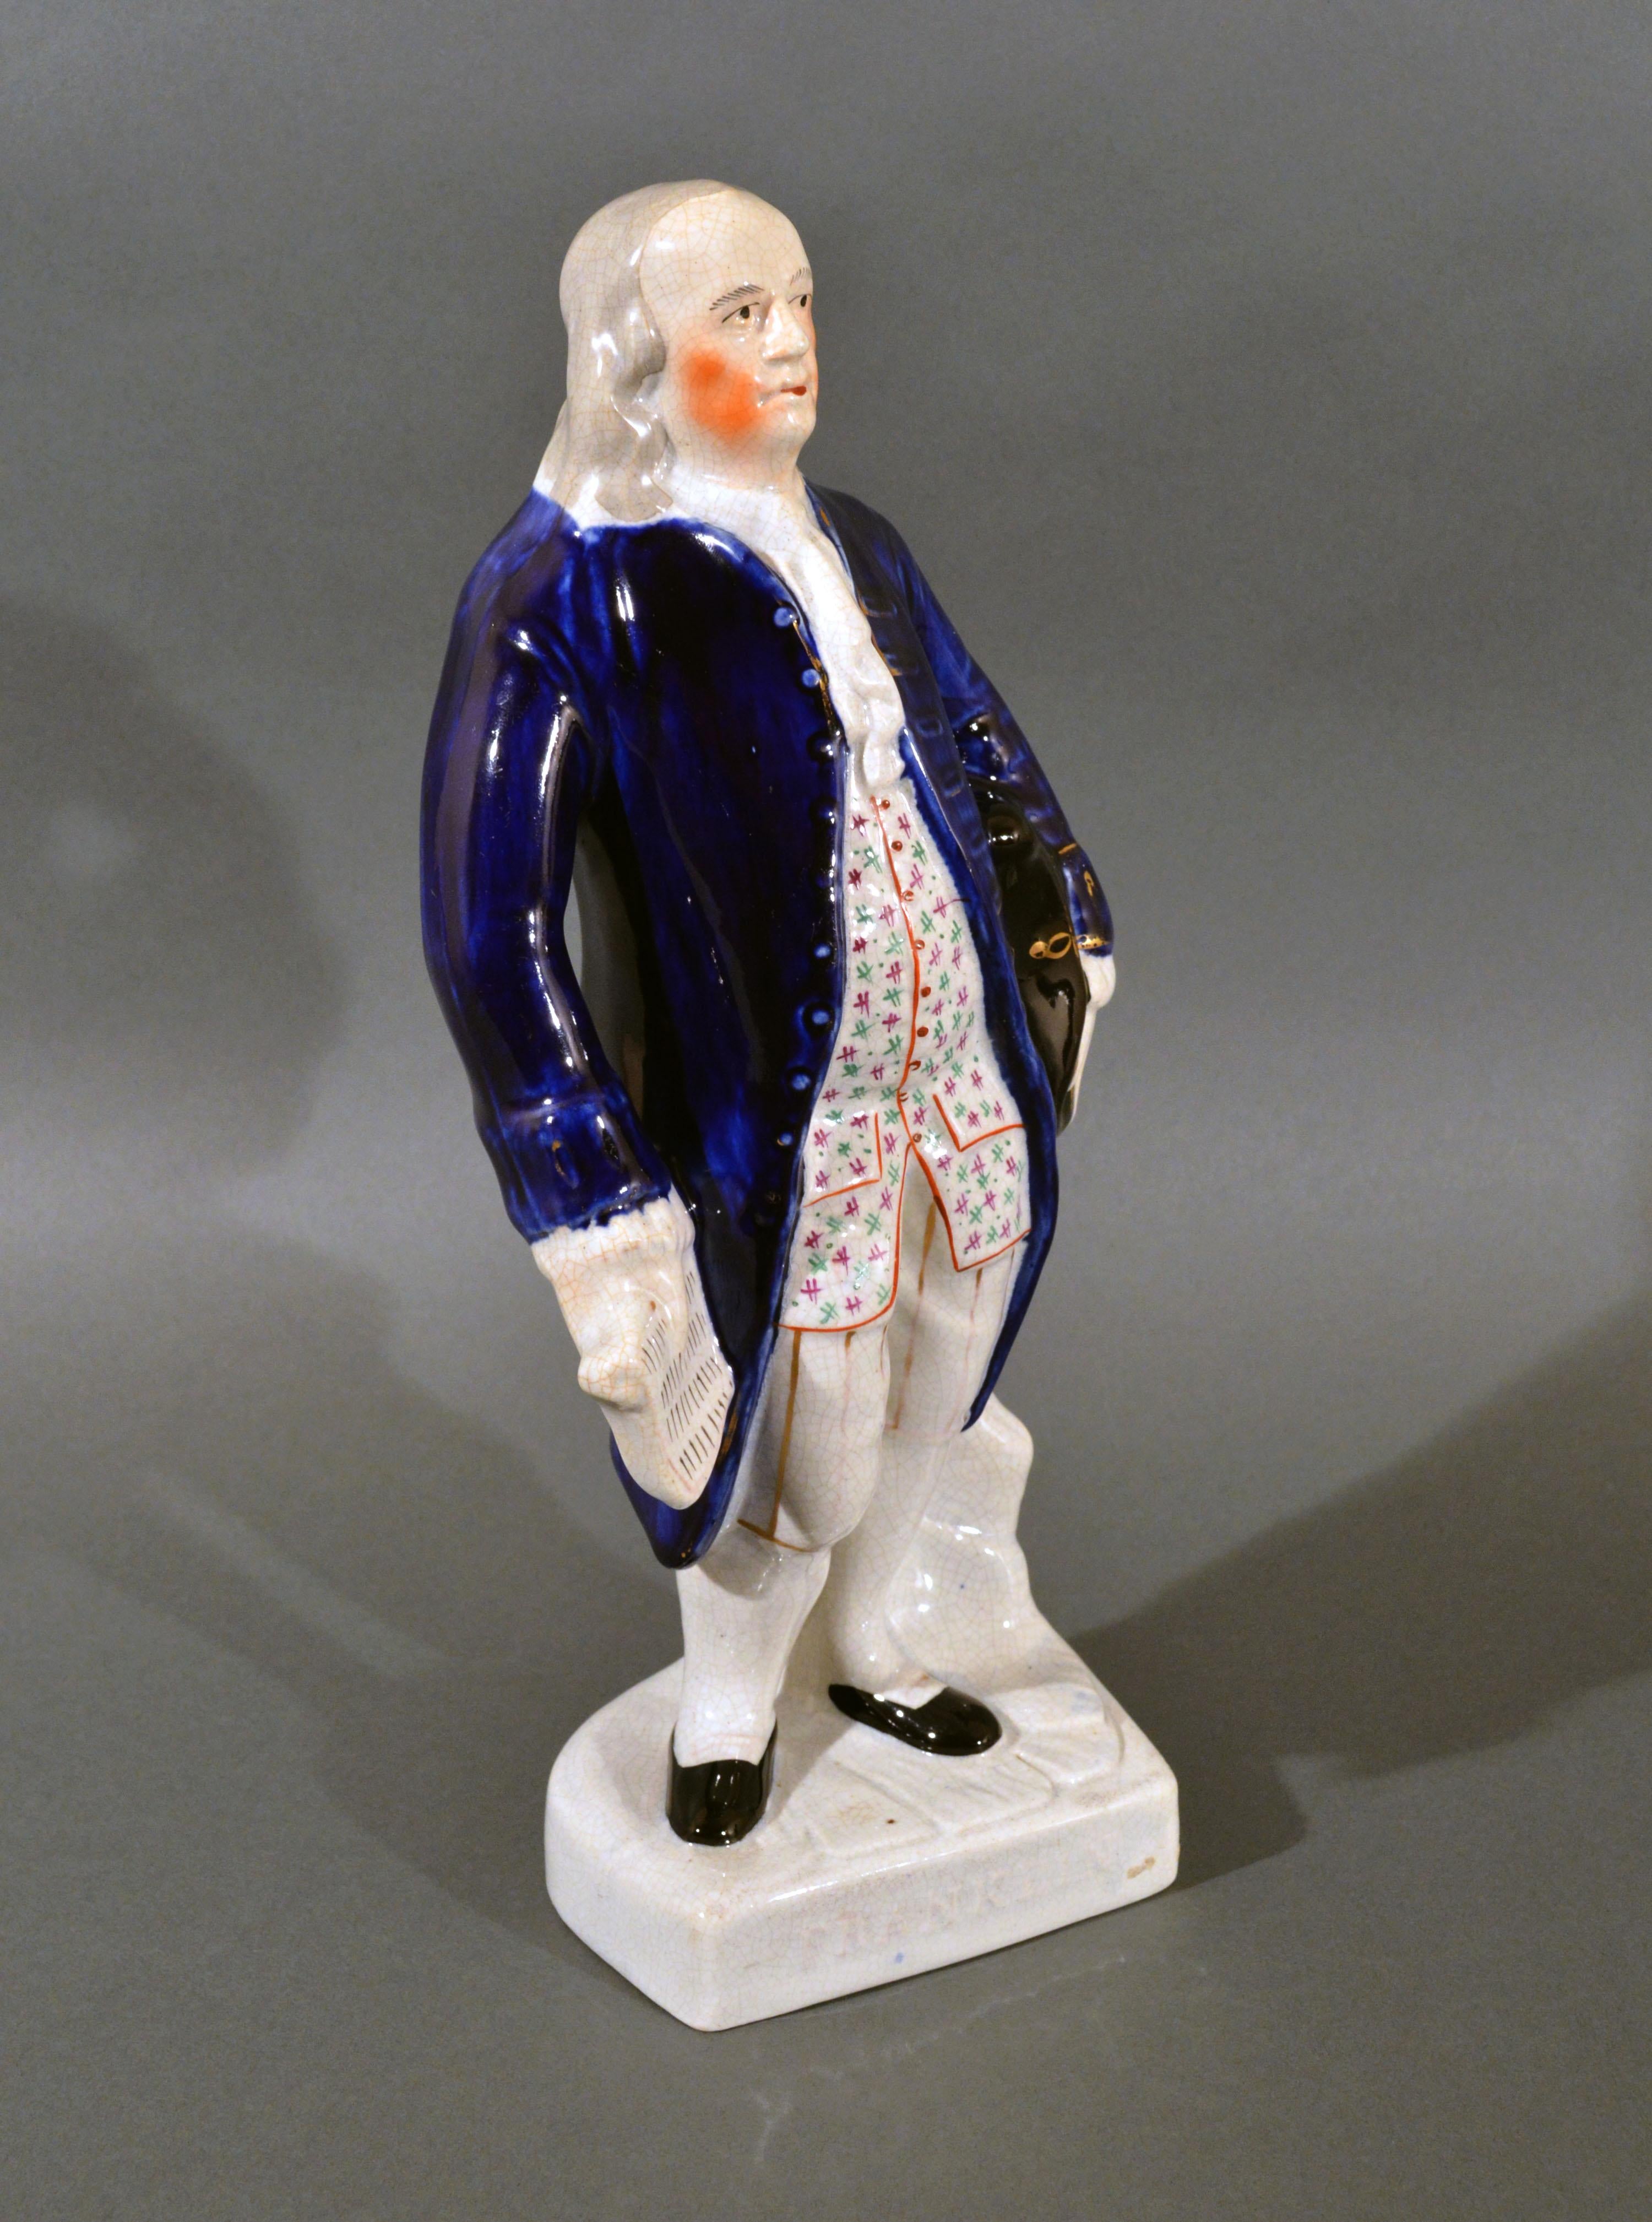 Große Staffordshire-Figur von Benjamin Franklin,
Benannt nach Franklin auf der Basis,
Mitte des 19. Jahrhunderts

Diese Staffordshire-Figur von Benjamin Franklin hat einen weißen Sockel mit dem eingegossenen Schriftzug Franklin auf der Vorderseite.